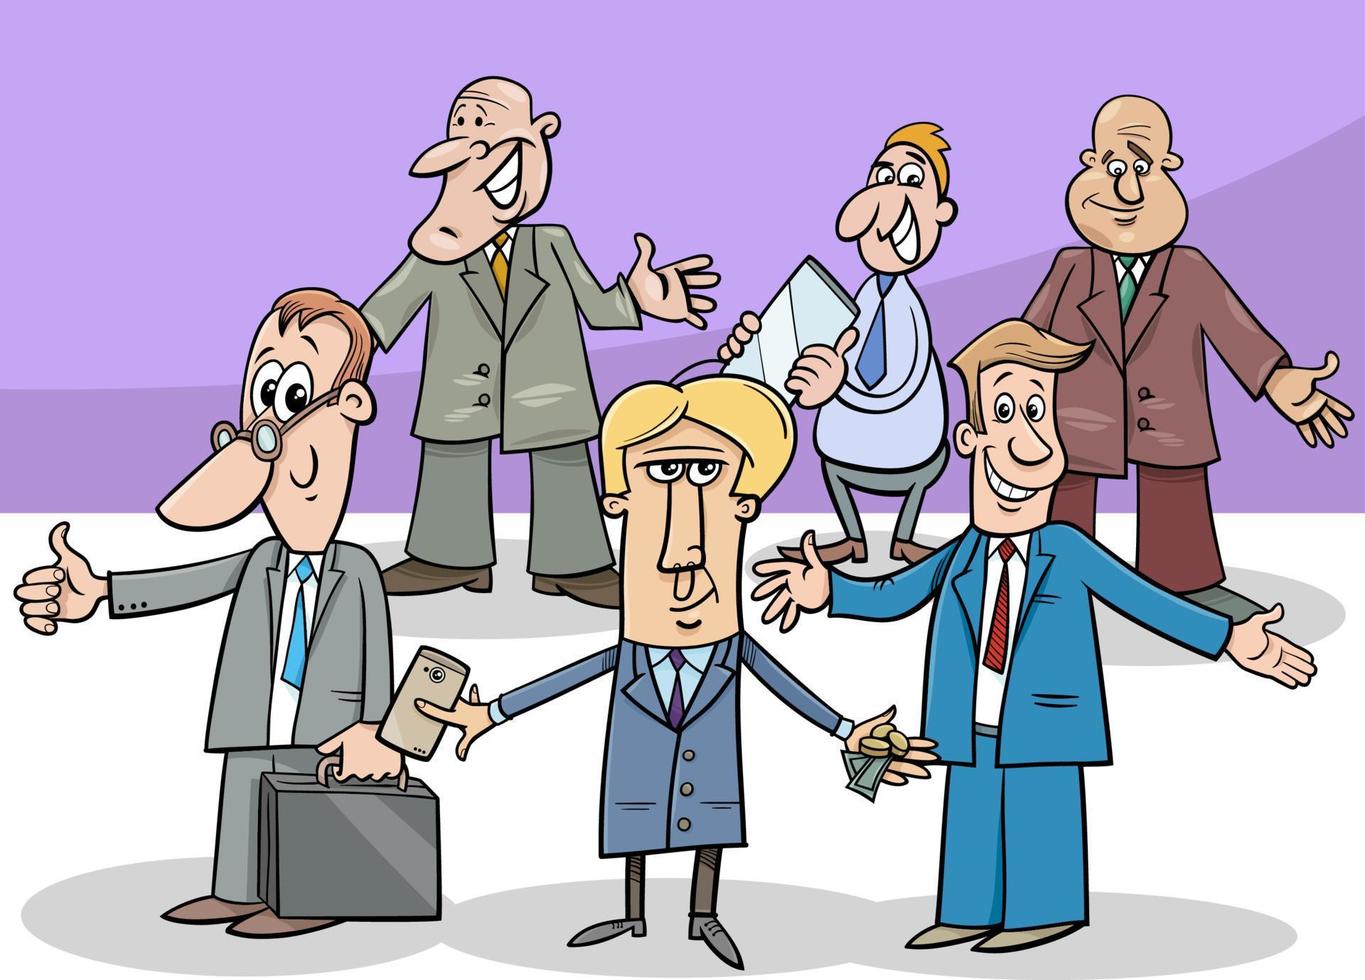 tecknade affärsmän och chefer karaktärer grupp vektor